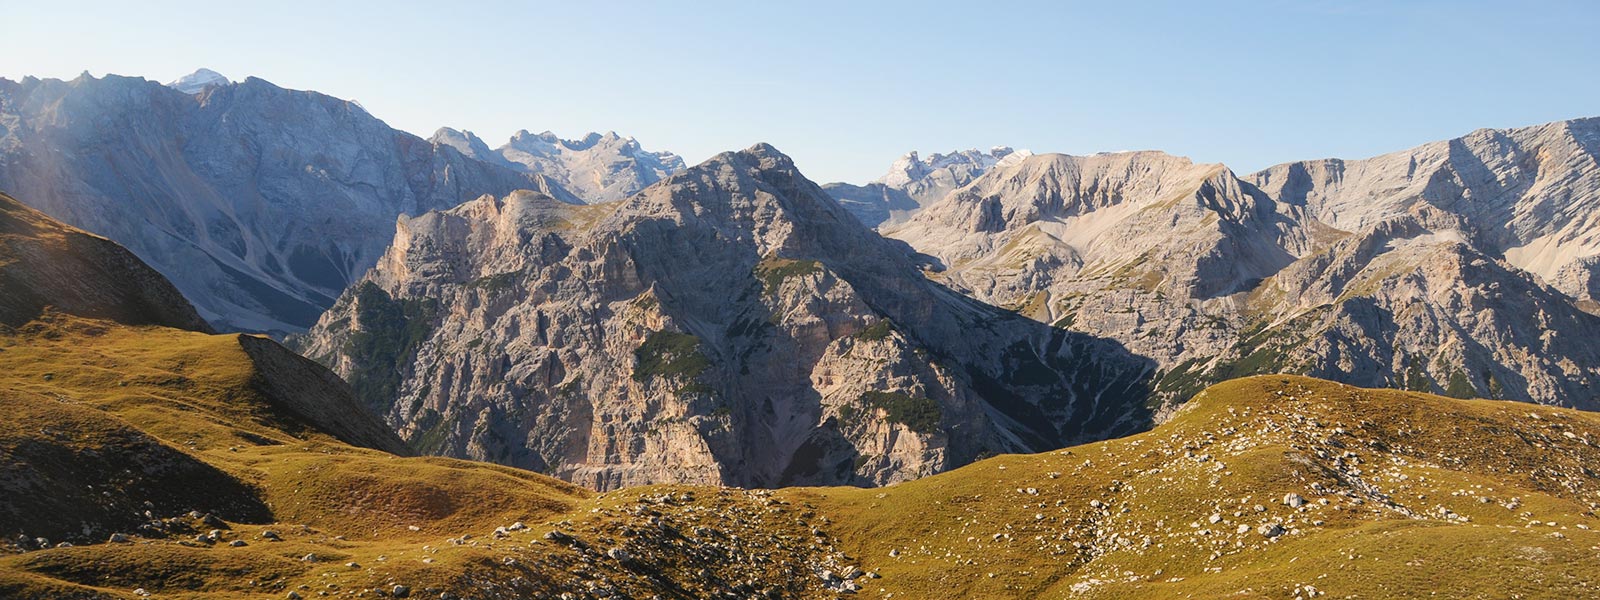 Sentieri escursionistici in Alto Adige